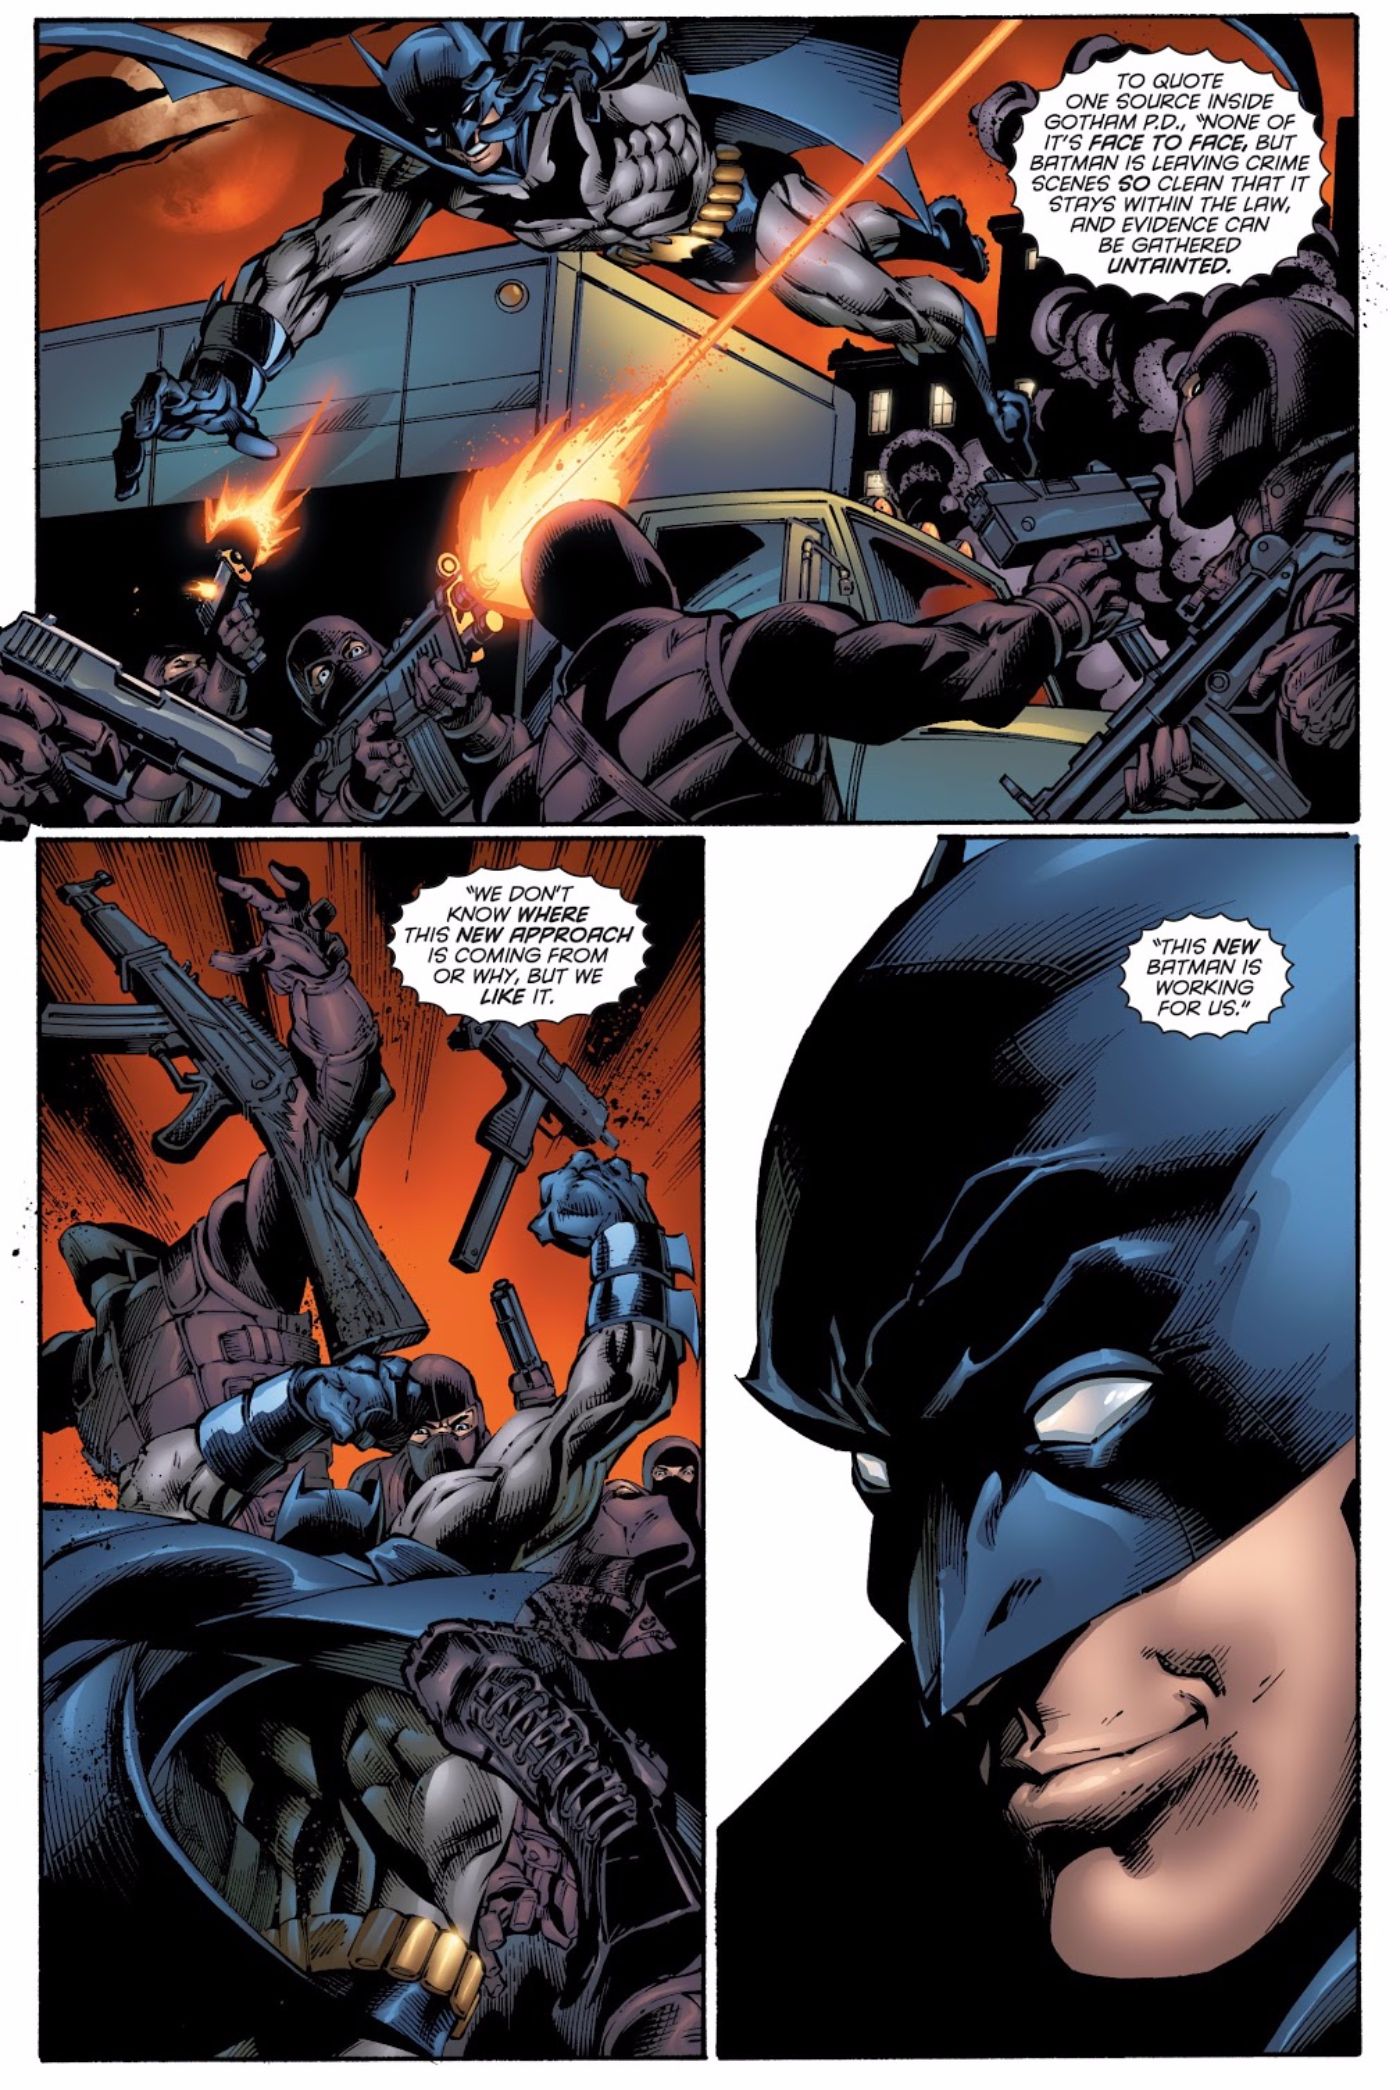 Nightwing is a better Batman than Batman.